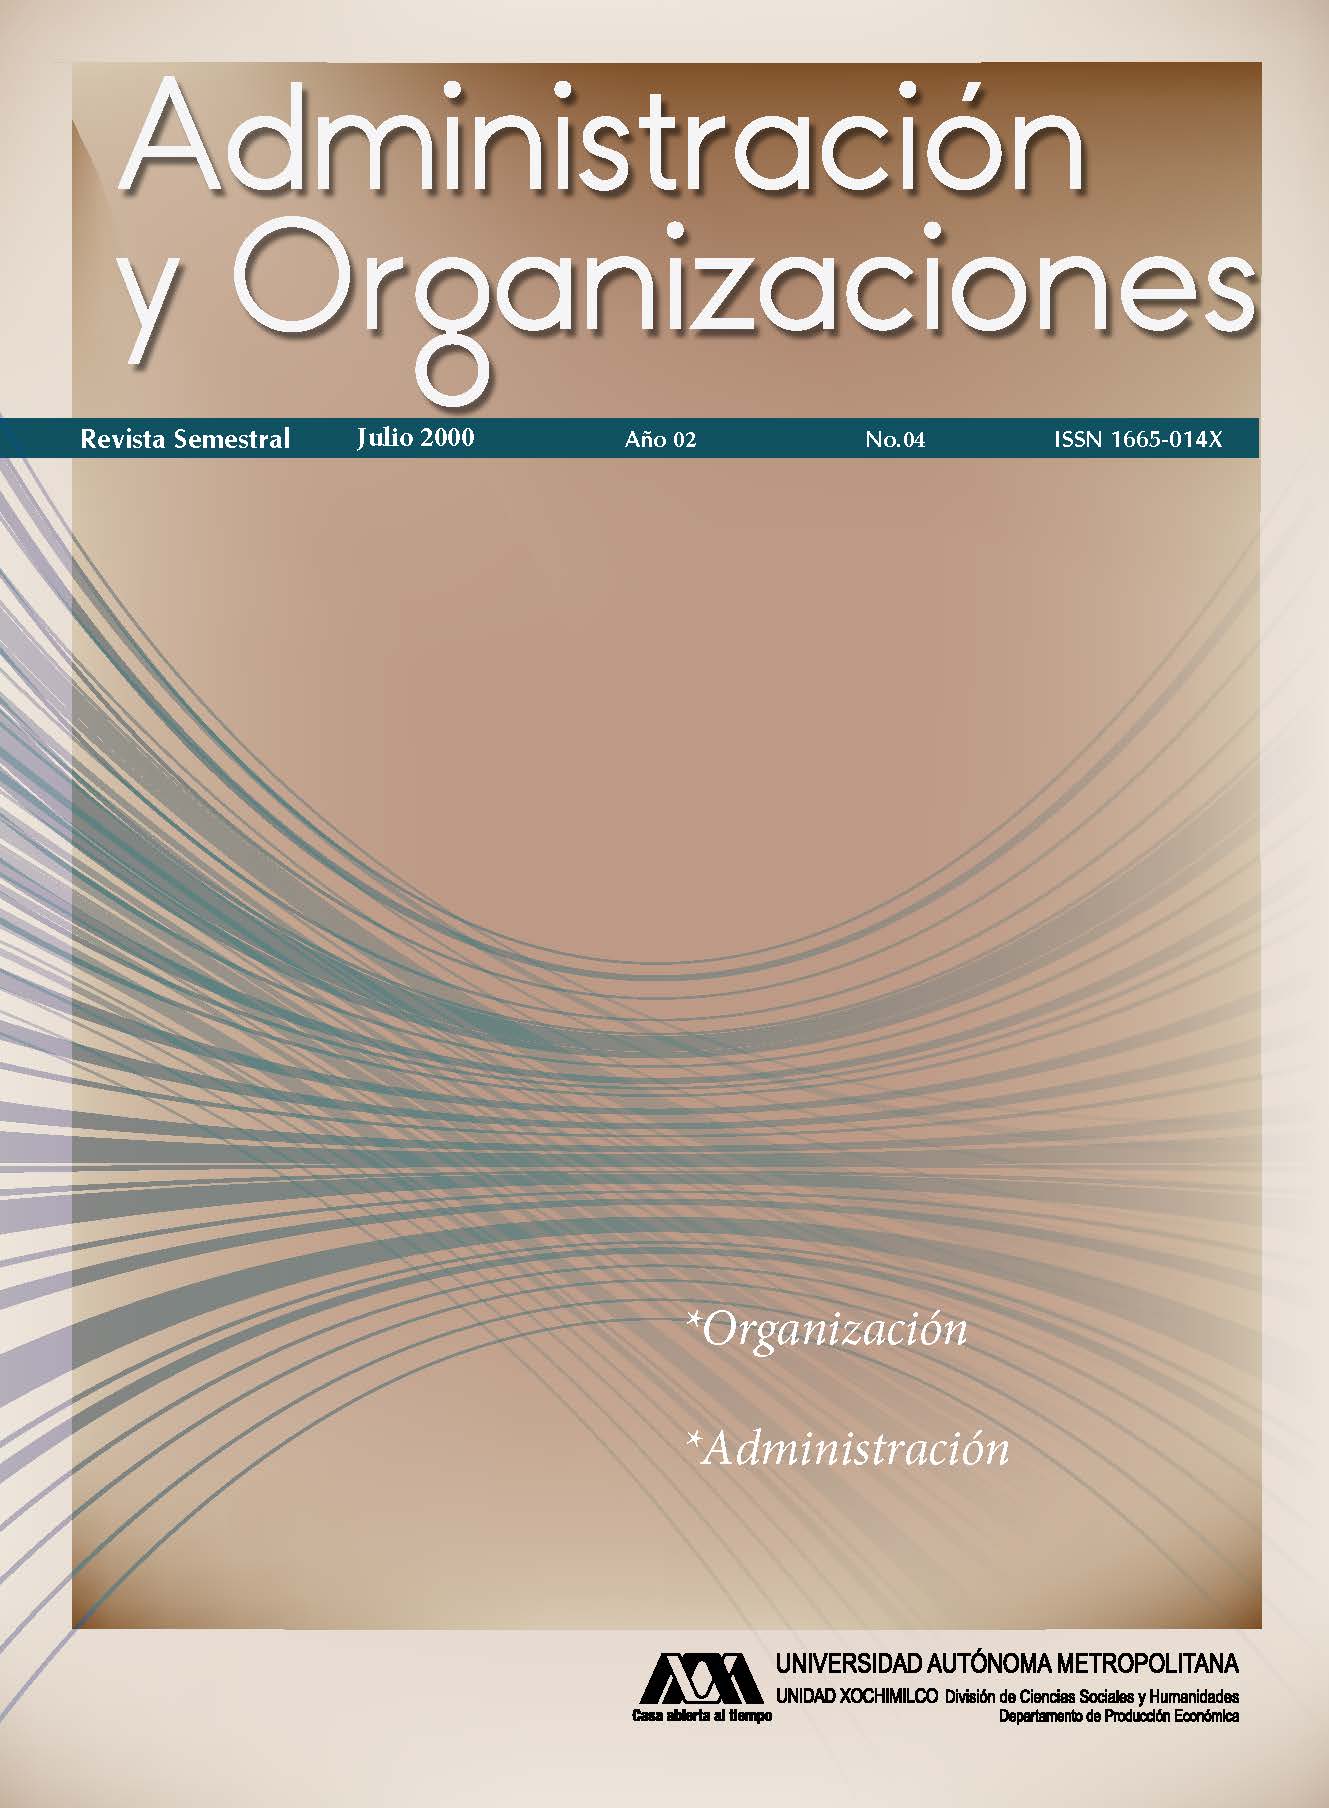 					Ver Vol. 2 Núm. 04 (2): Administración y Organizaciones
				